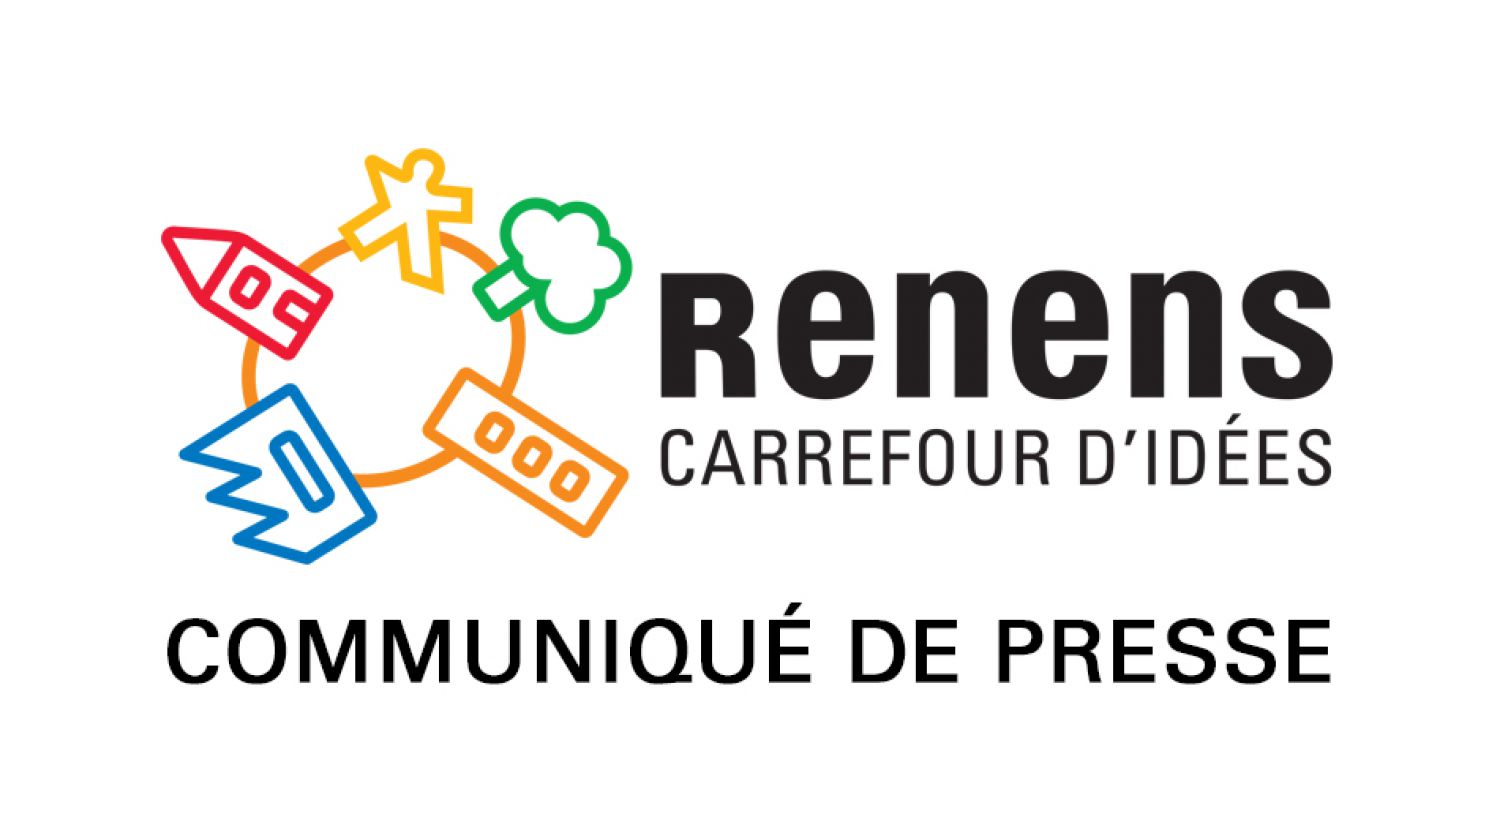 Organisation de la Municipalité de Renens 
pour la législature 2021-2026 - Répartition des directions
